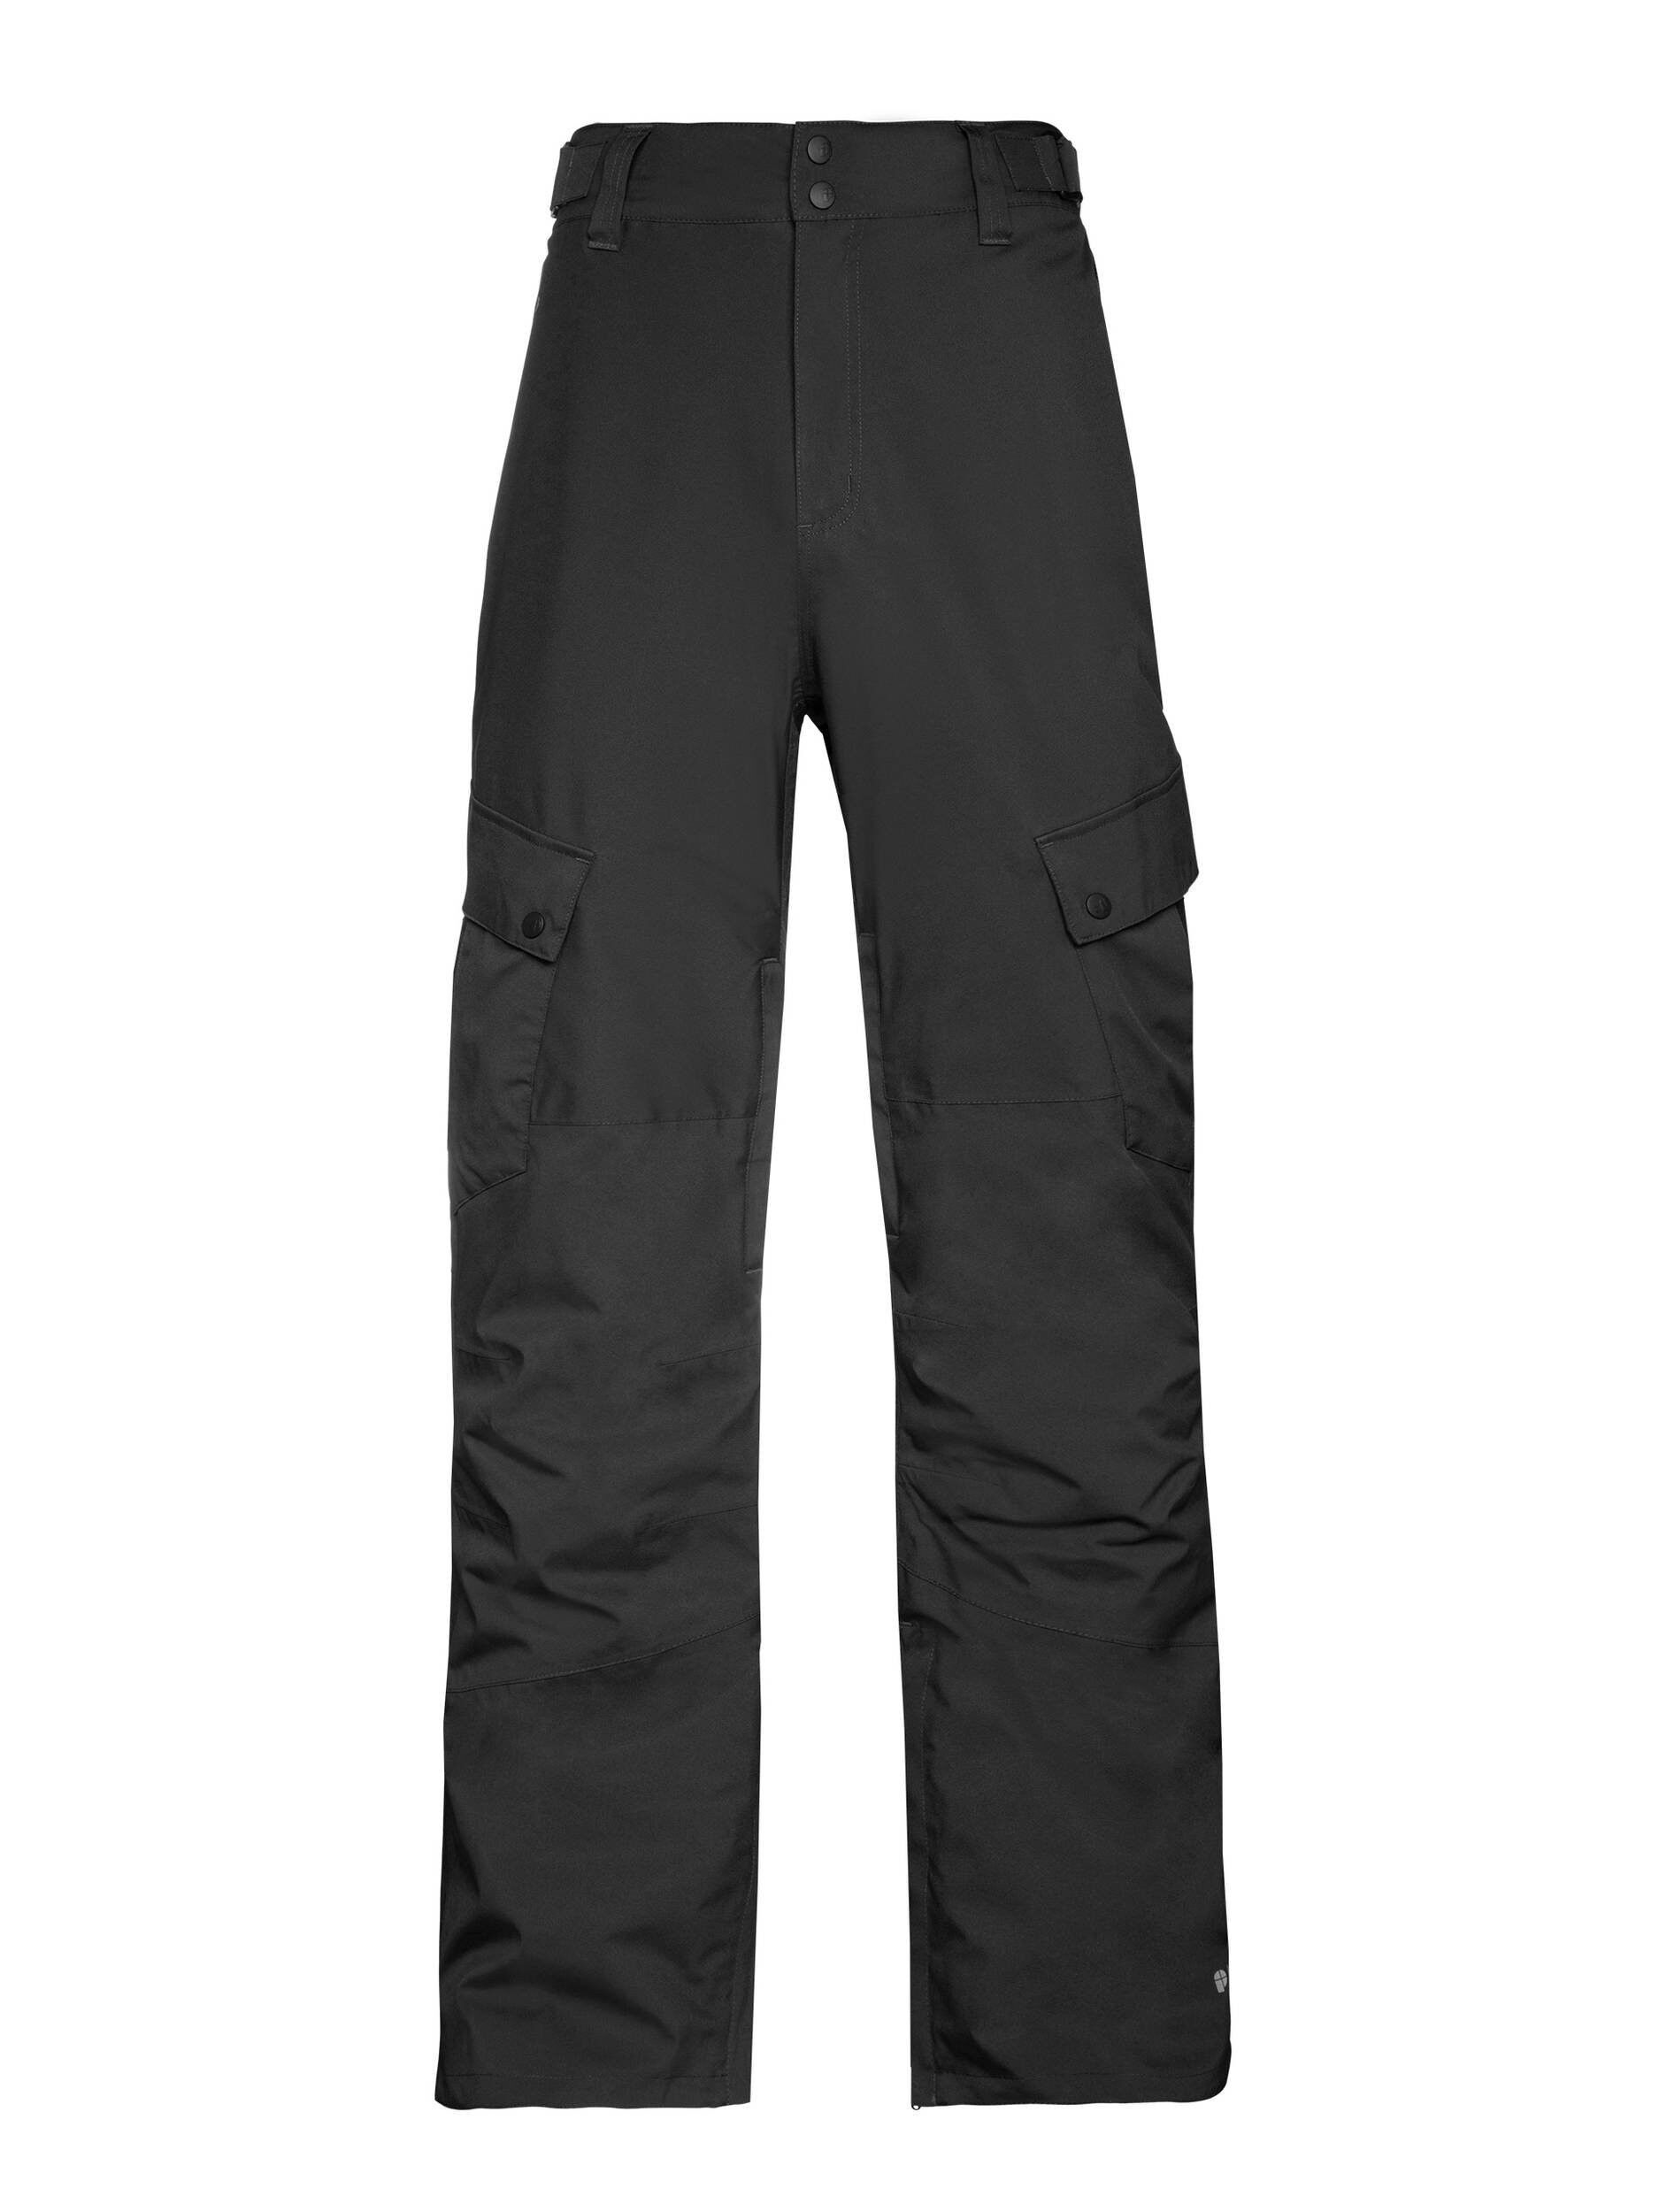 Protest Zucca 20 - Ski pants - Men's